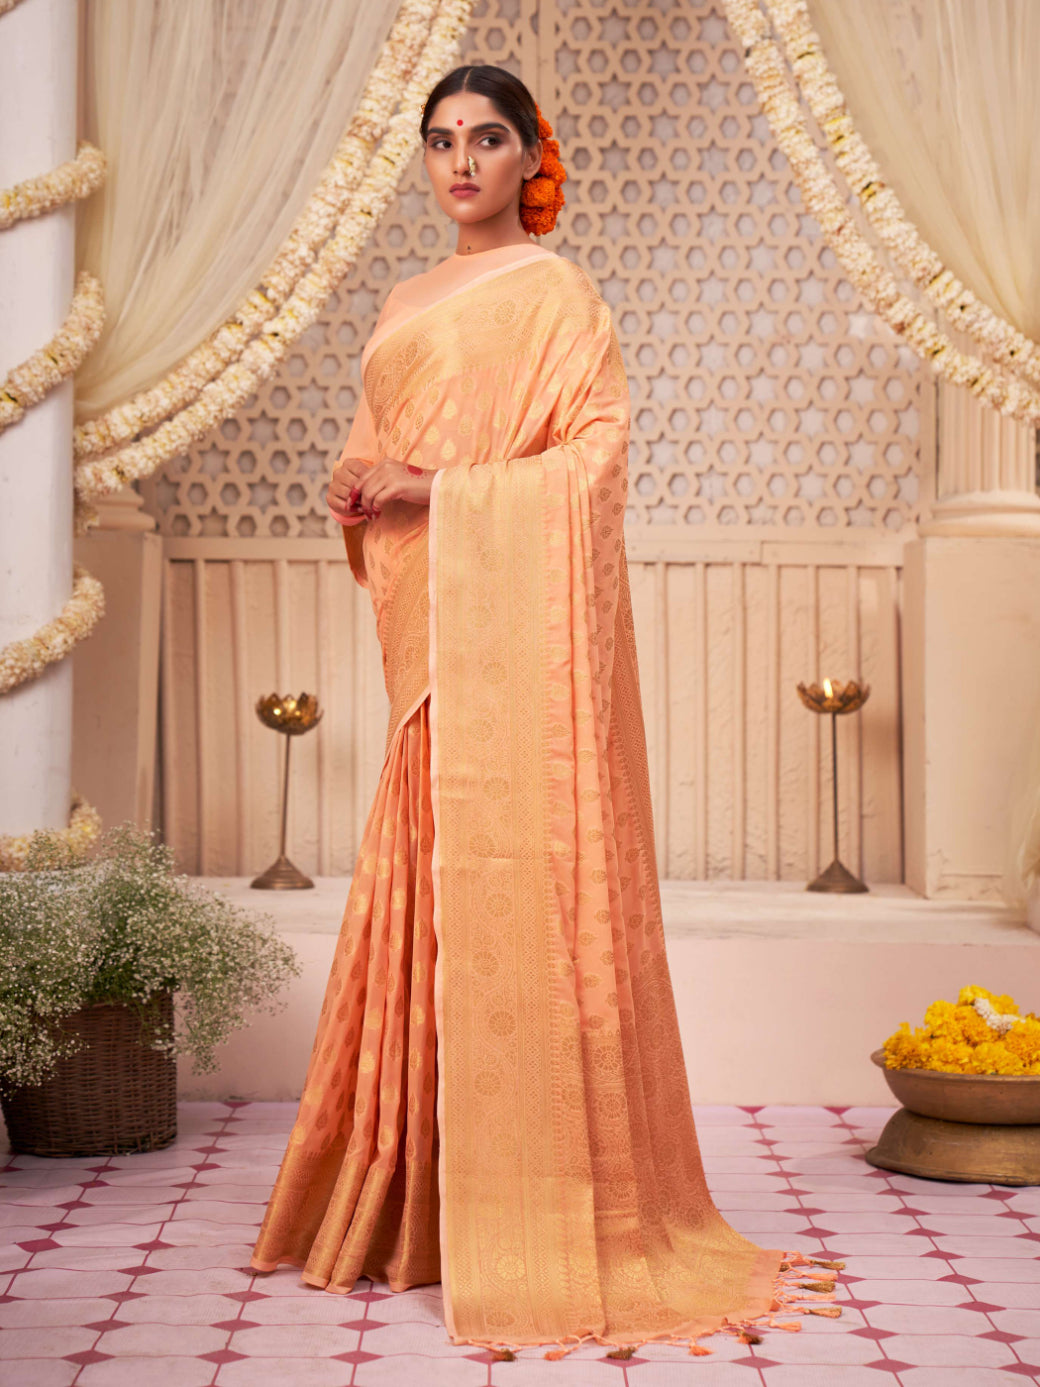 Atomic Tangerine Orange Gold Zari Khaddi Banarasi Georgette Saree | House of Vardha